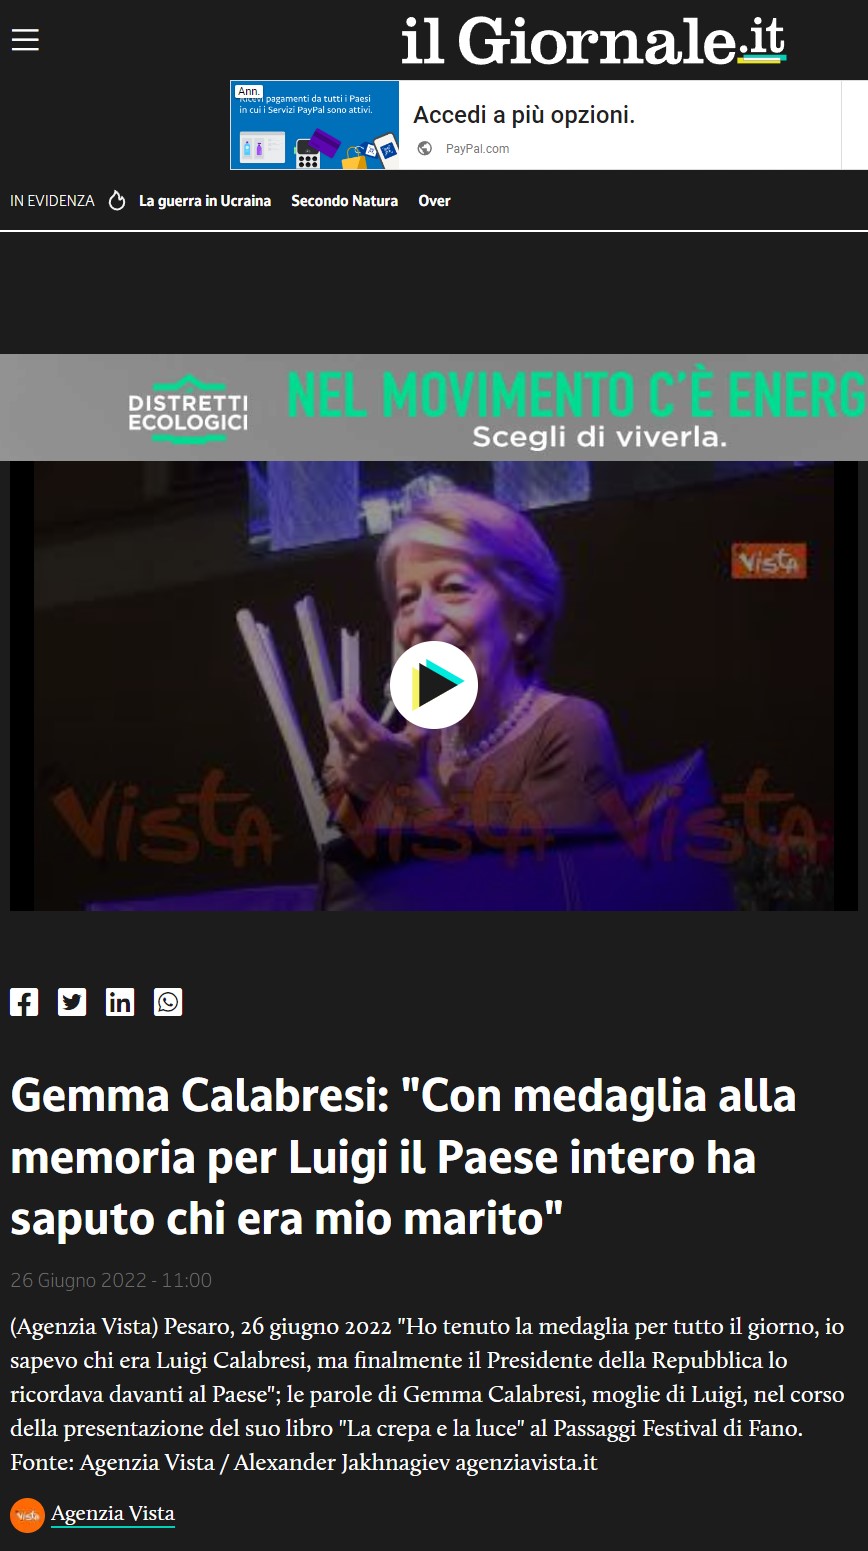 ilgiornale-it-video-politica-gemma-calabresi-medaglia-memoria-luigi-paese-intero